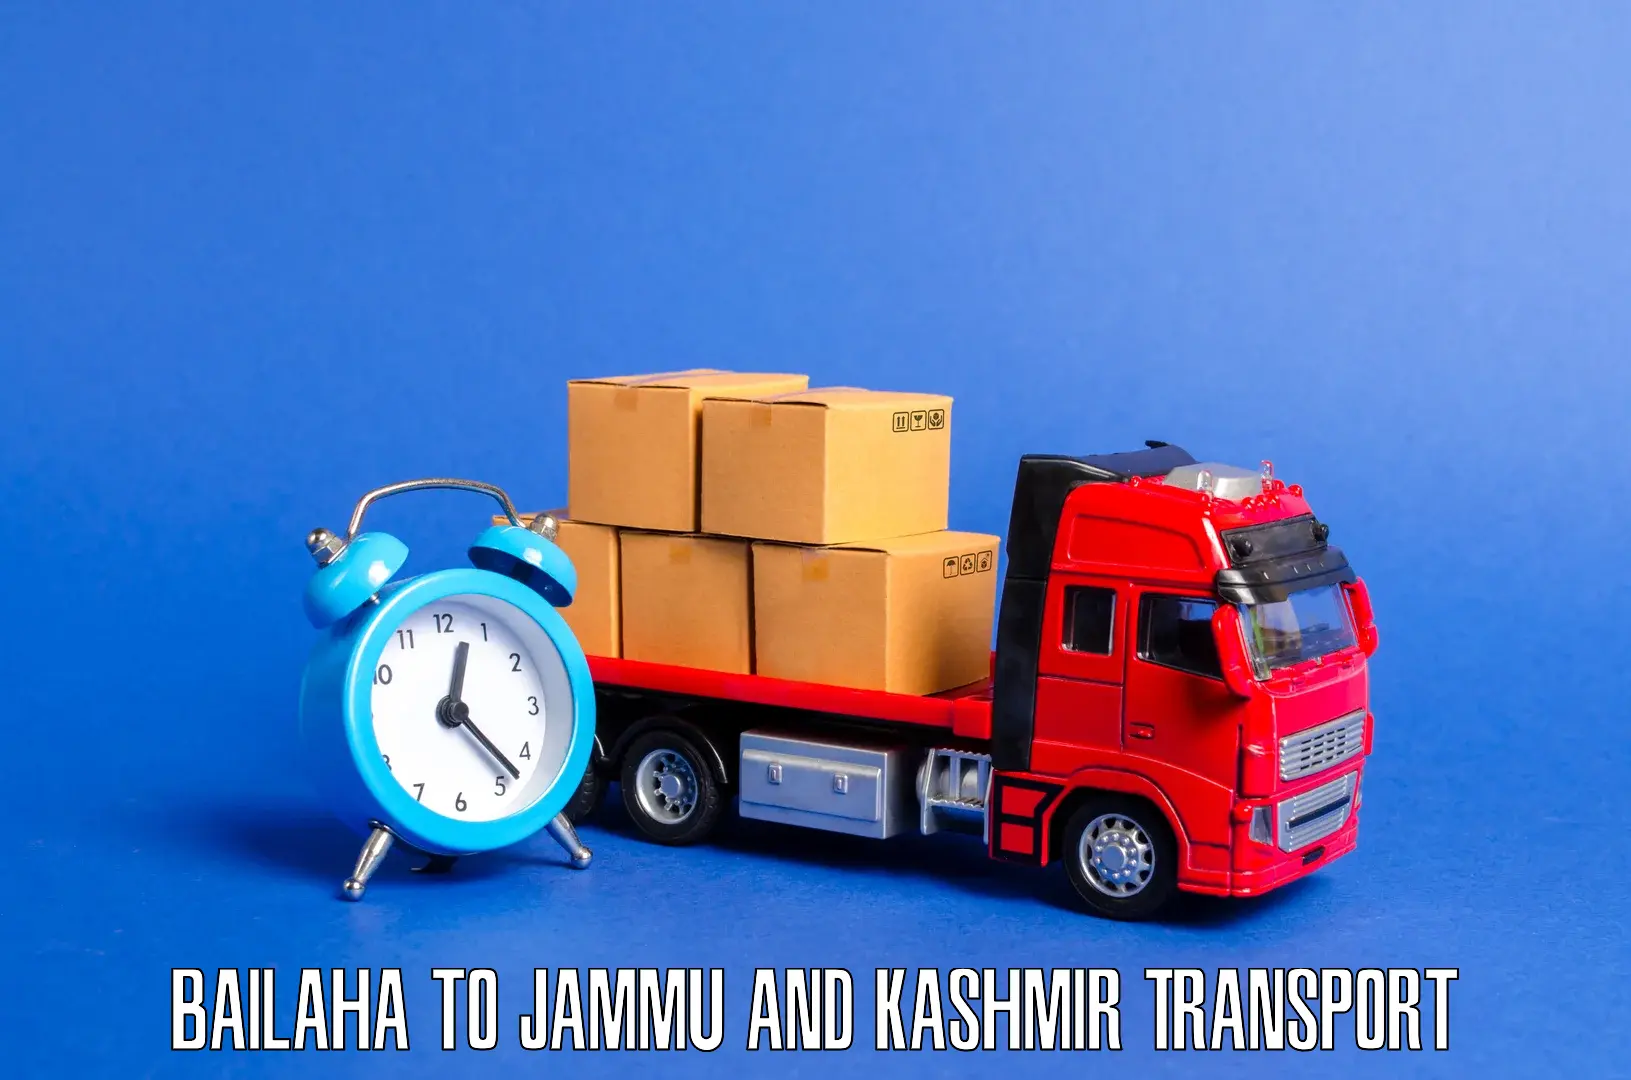 Intercity transport Bailaha to Jammu and Kashmir